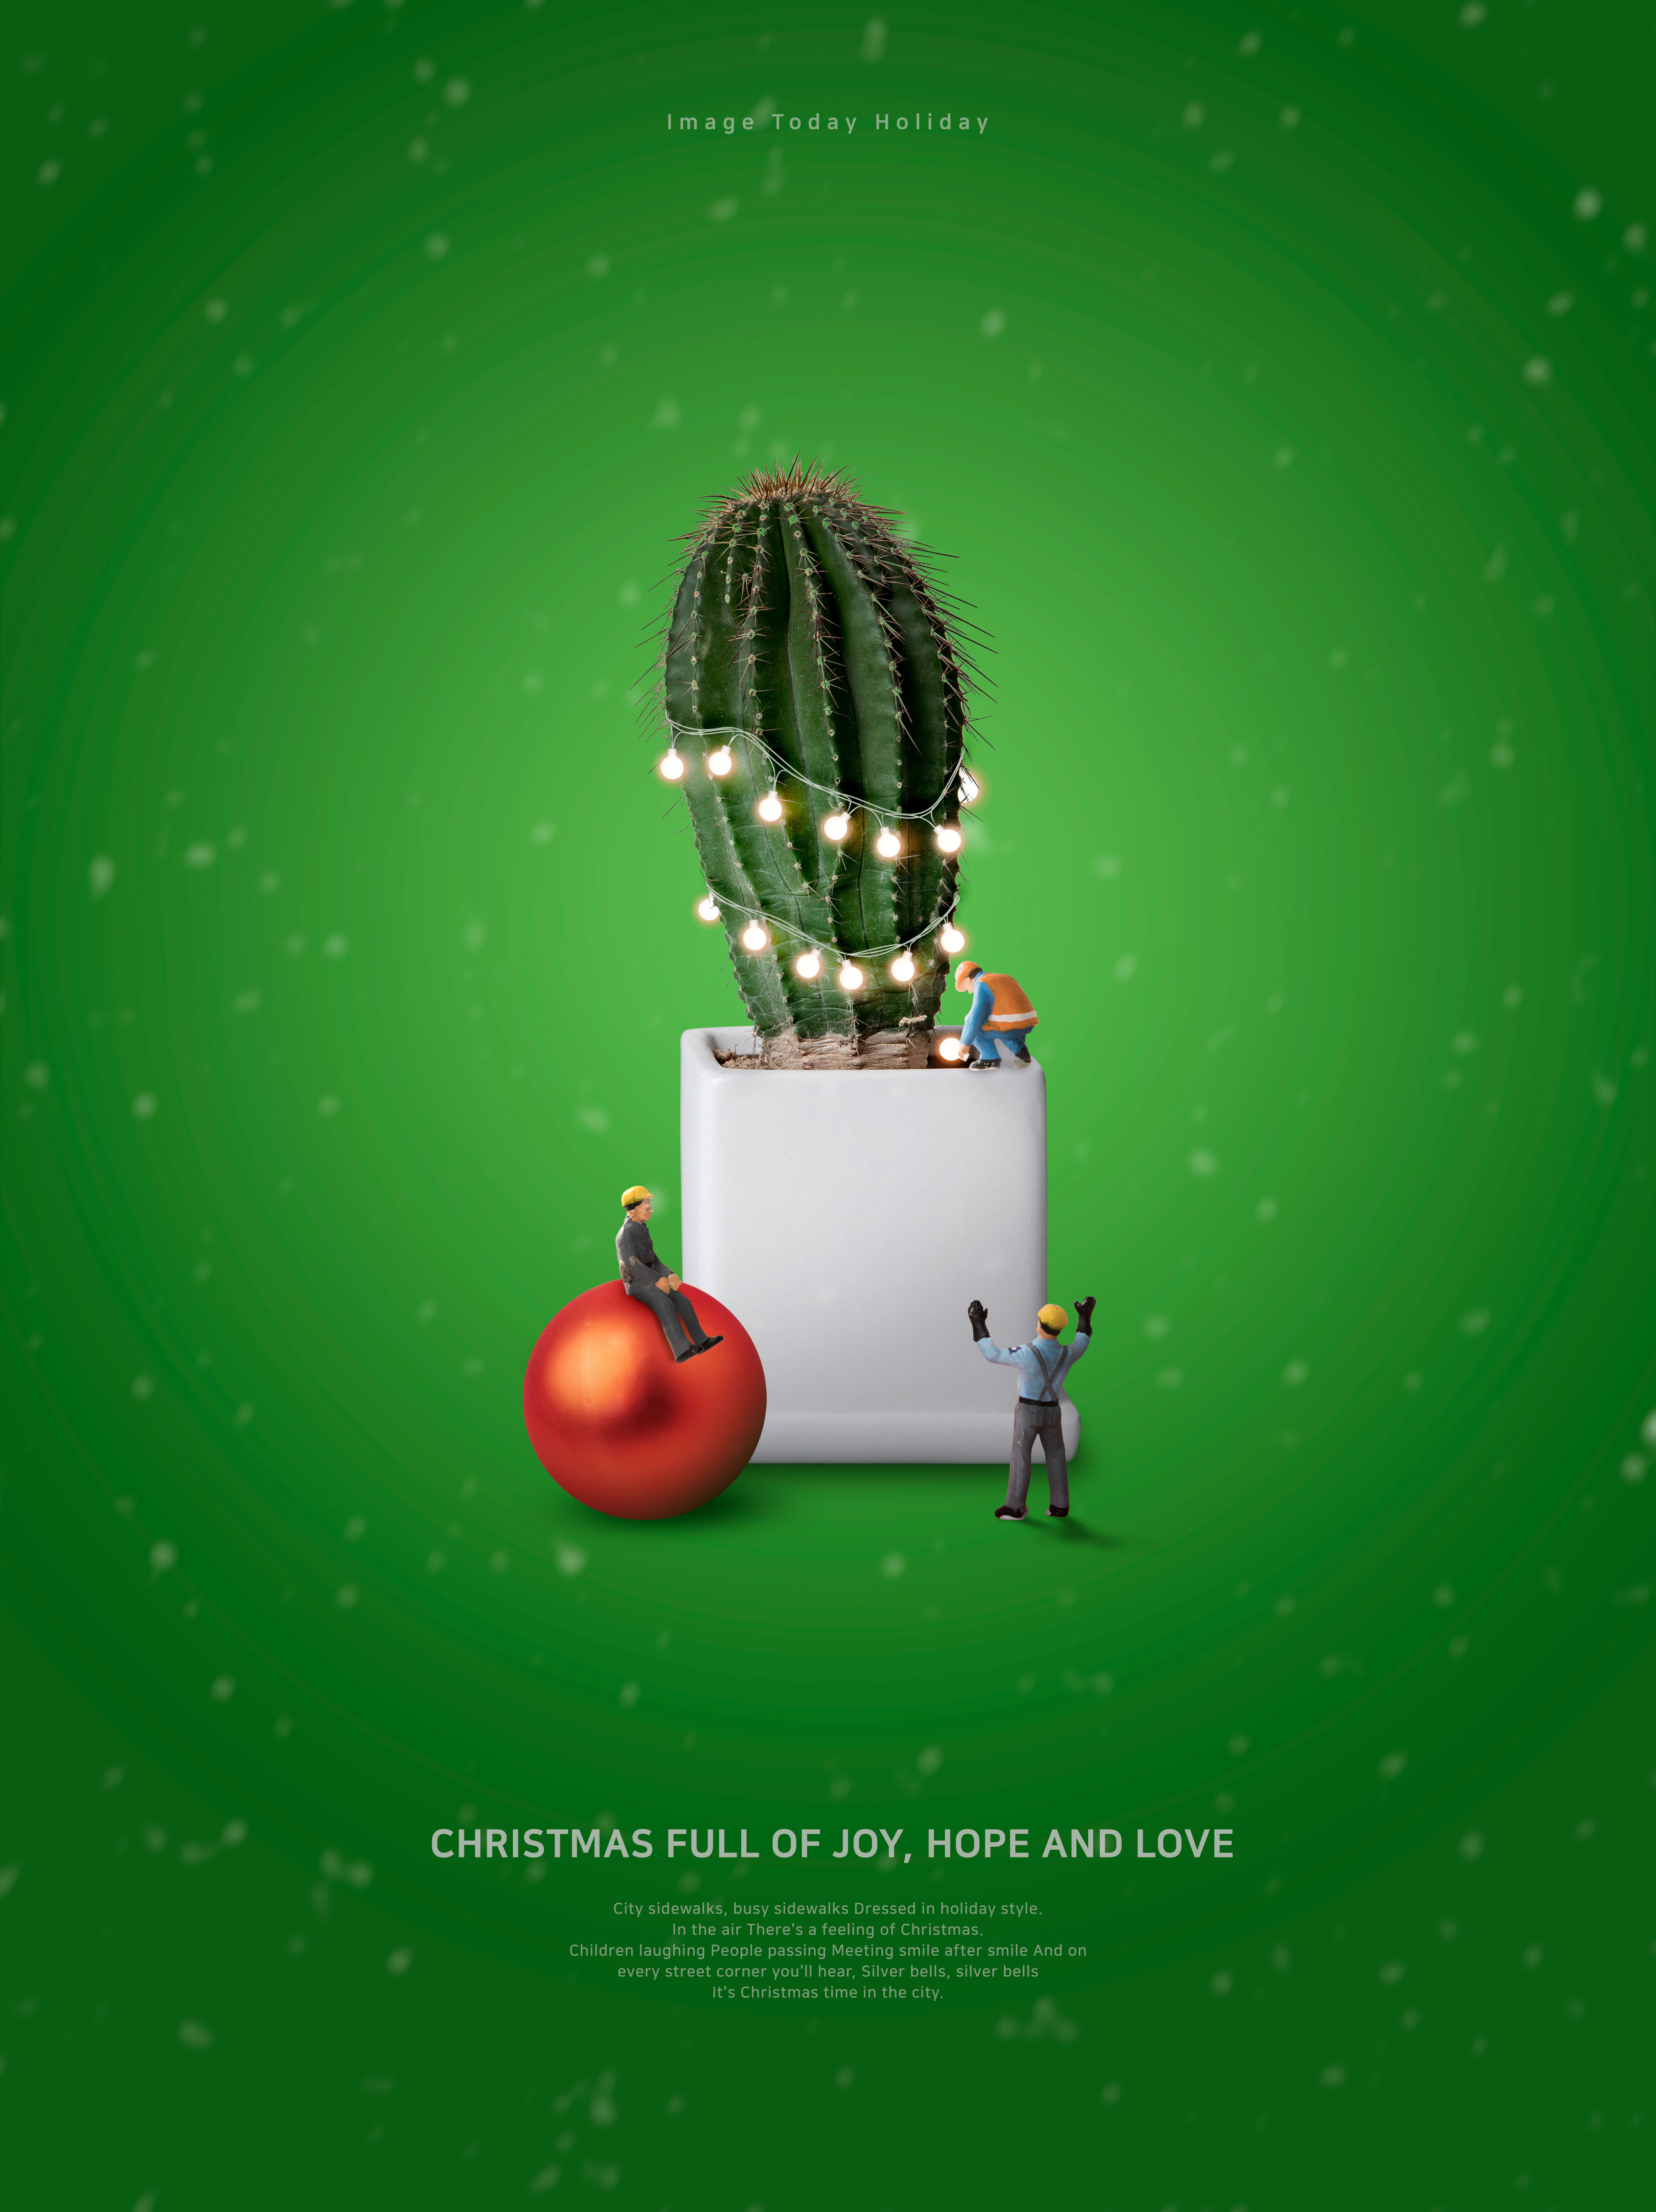 多肉仙人掌创意圣诞节主题海报模板psd素材插图